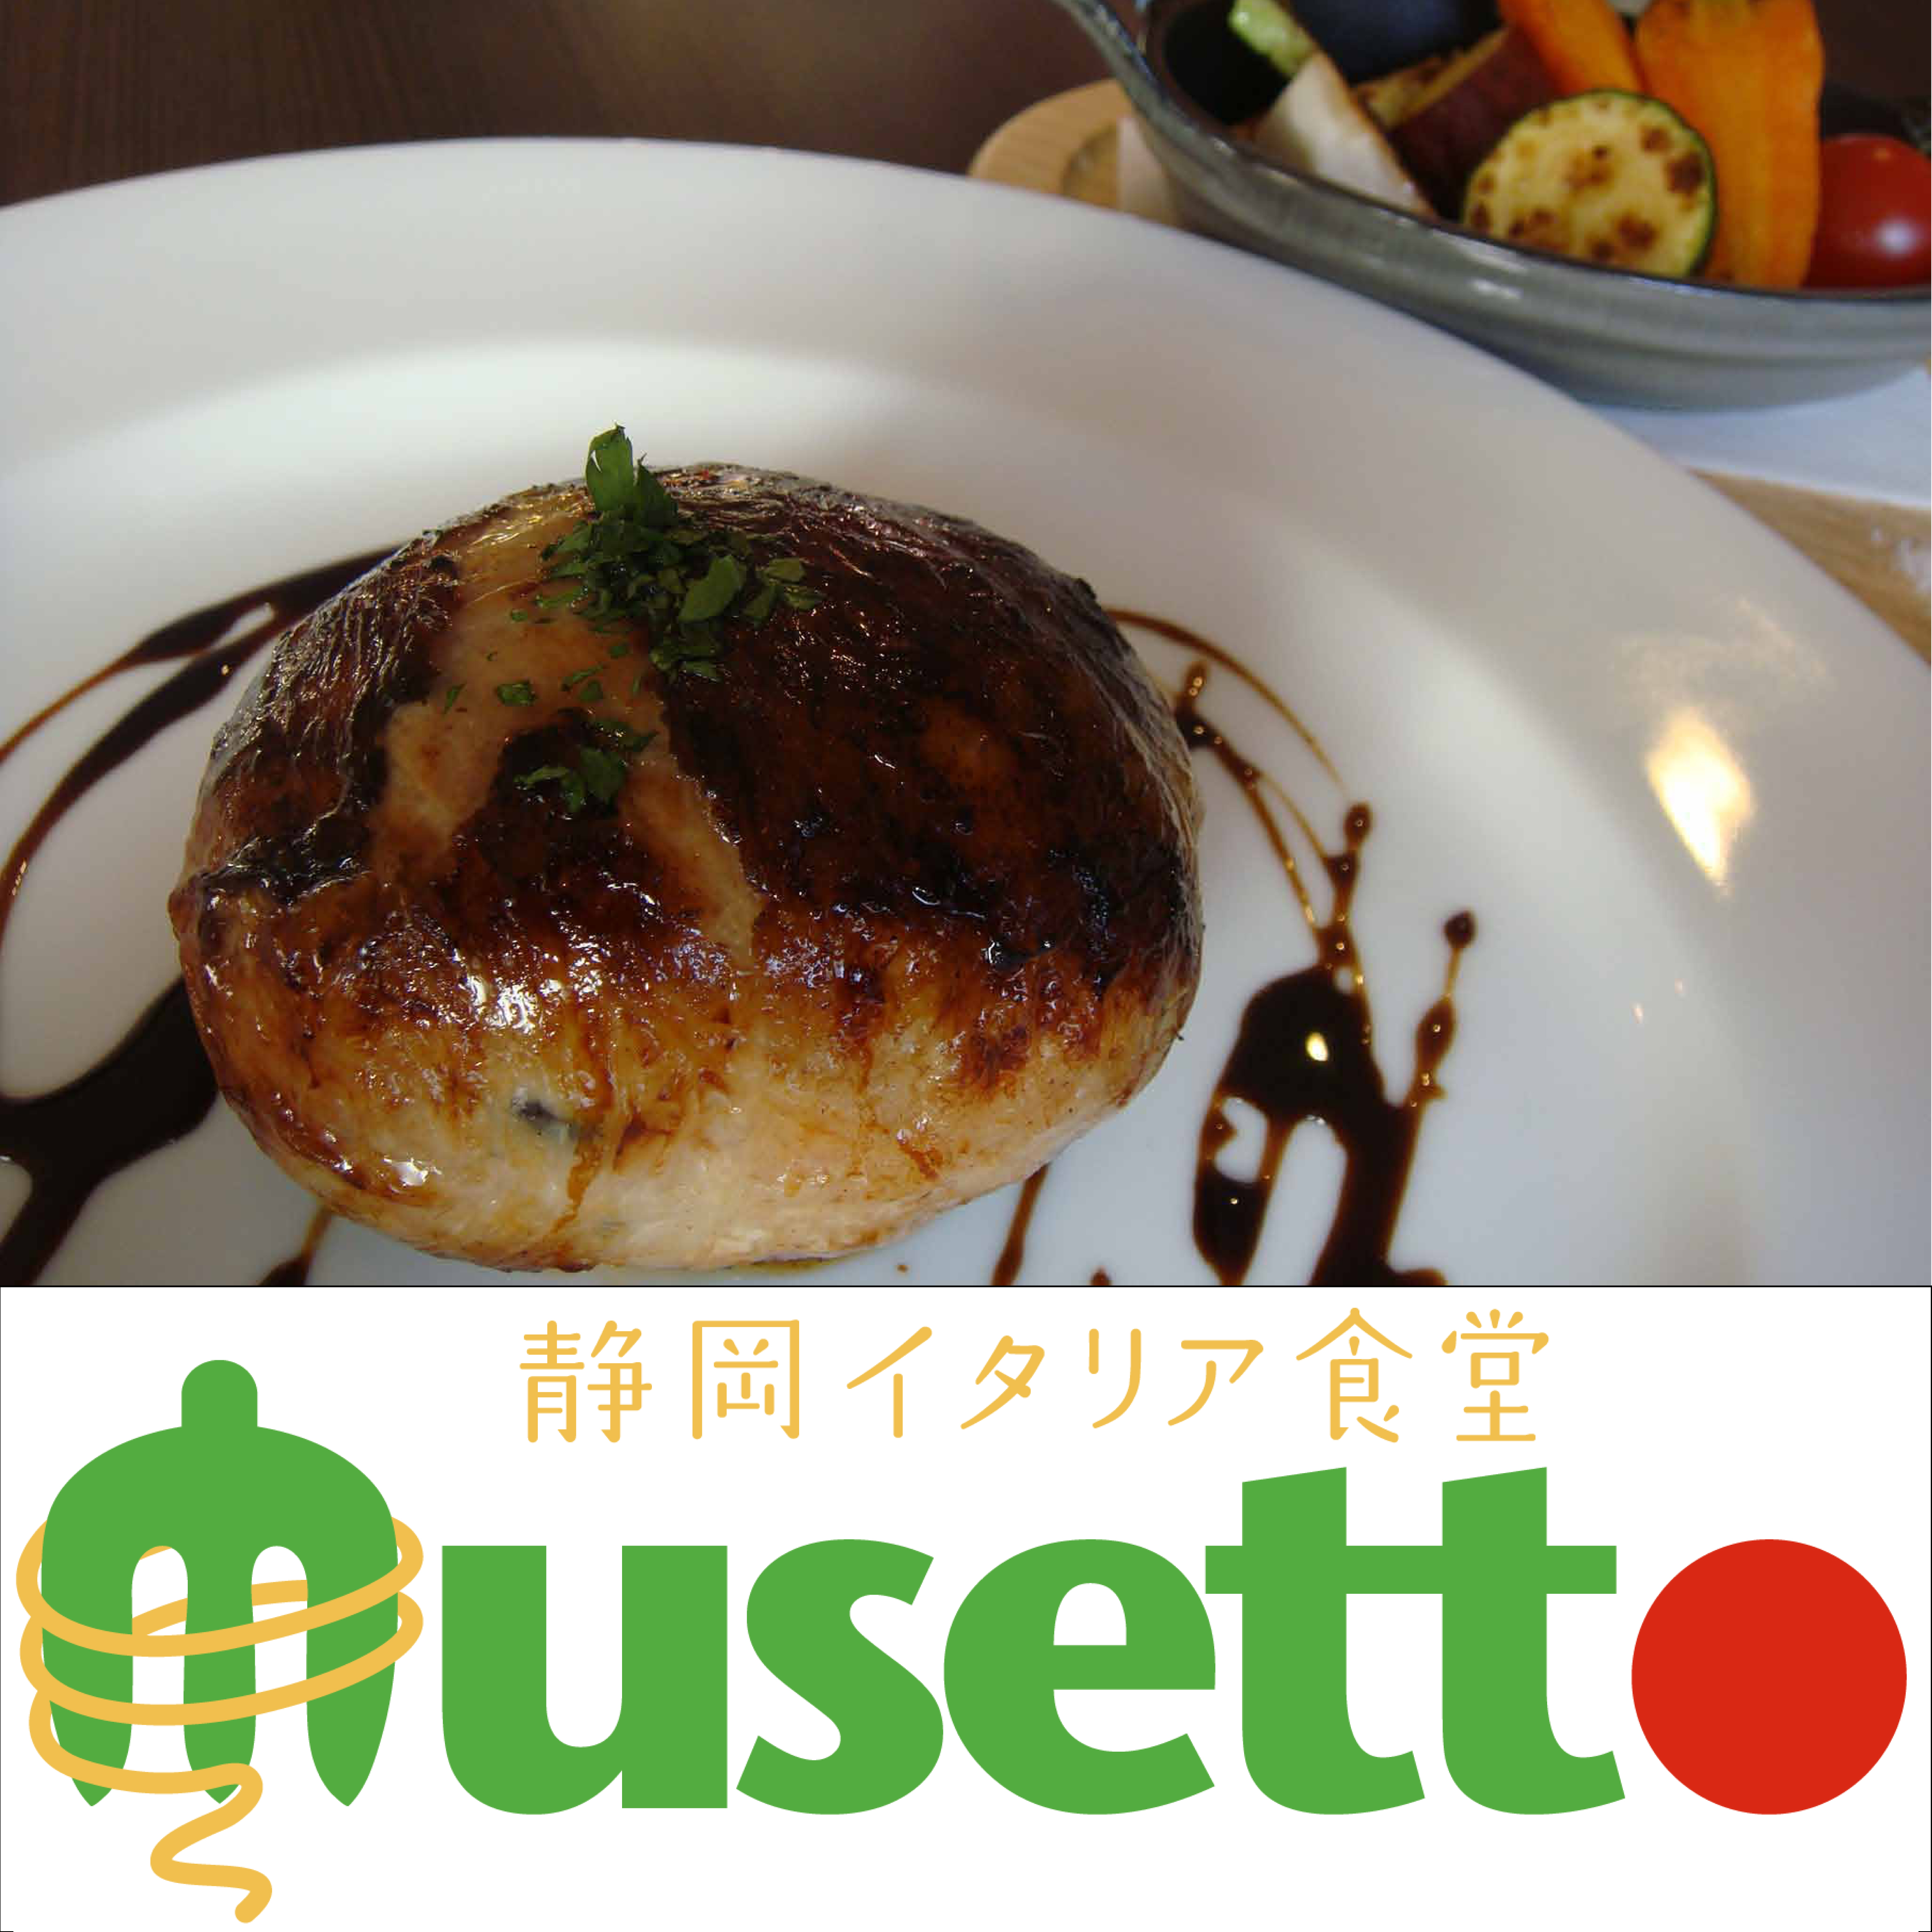 静岡イタリア食堂 Musetto